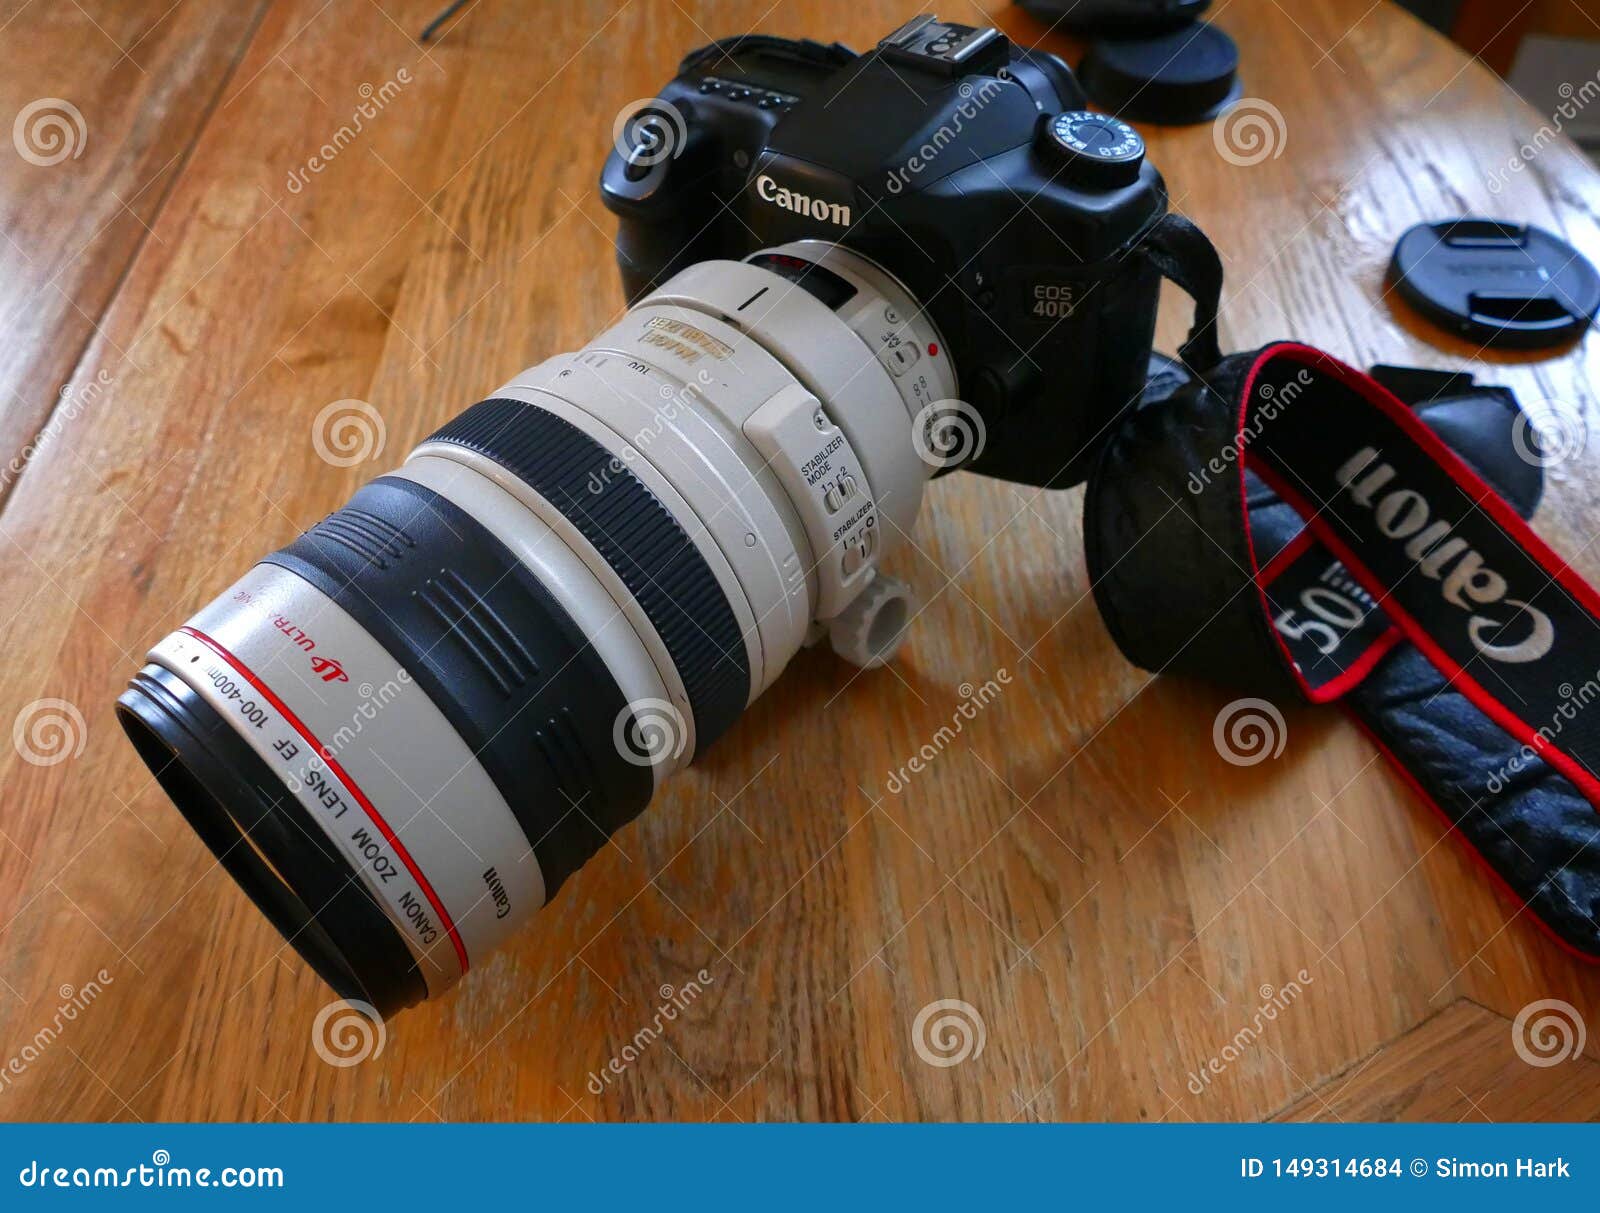 Canon EOS 40D Met Lens 100-400 Redactionele Stock Afbeelding - Image of  voorwerp, studio: 149314684